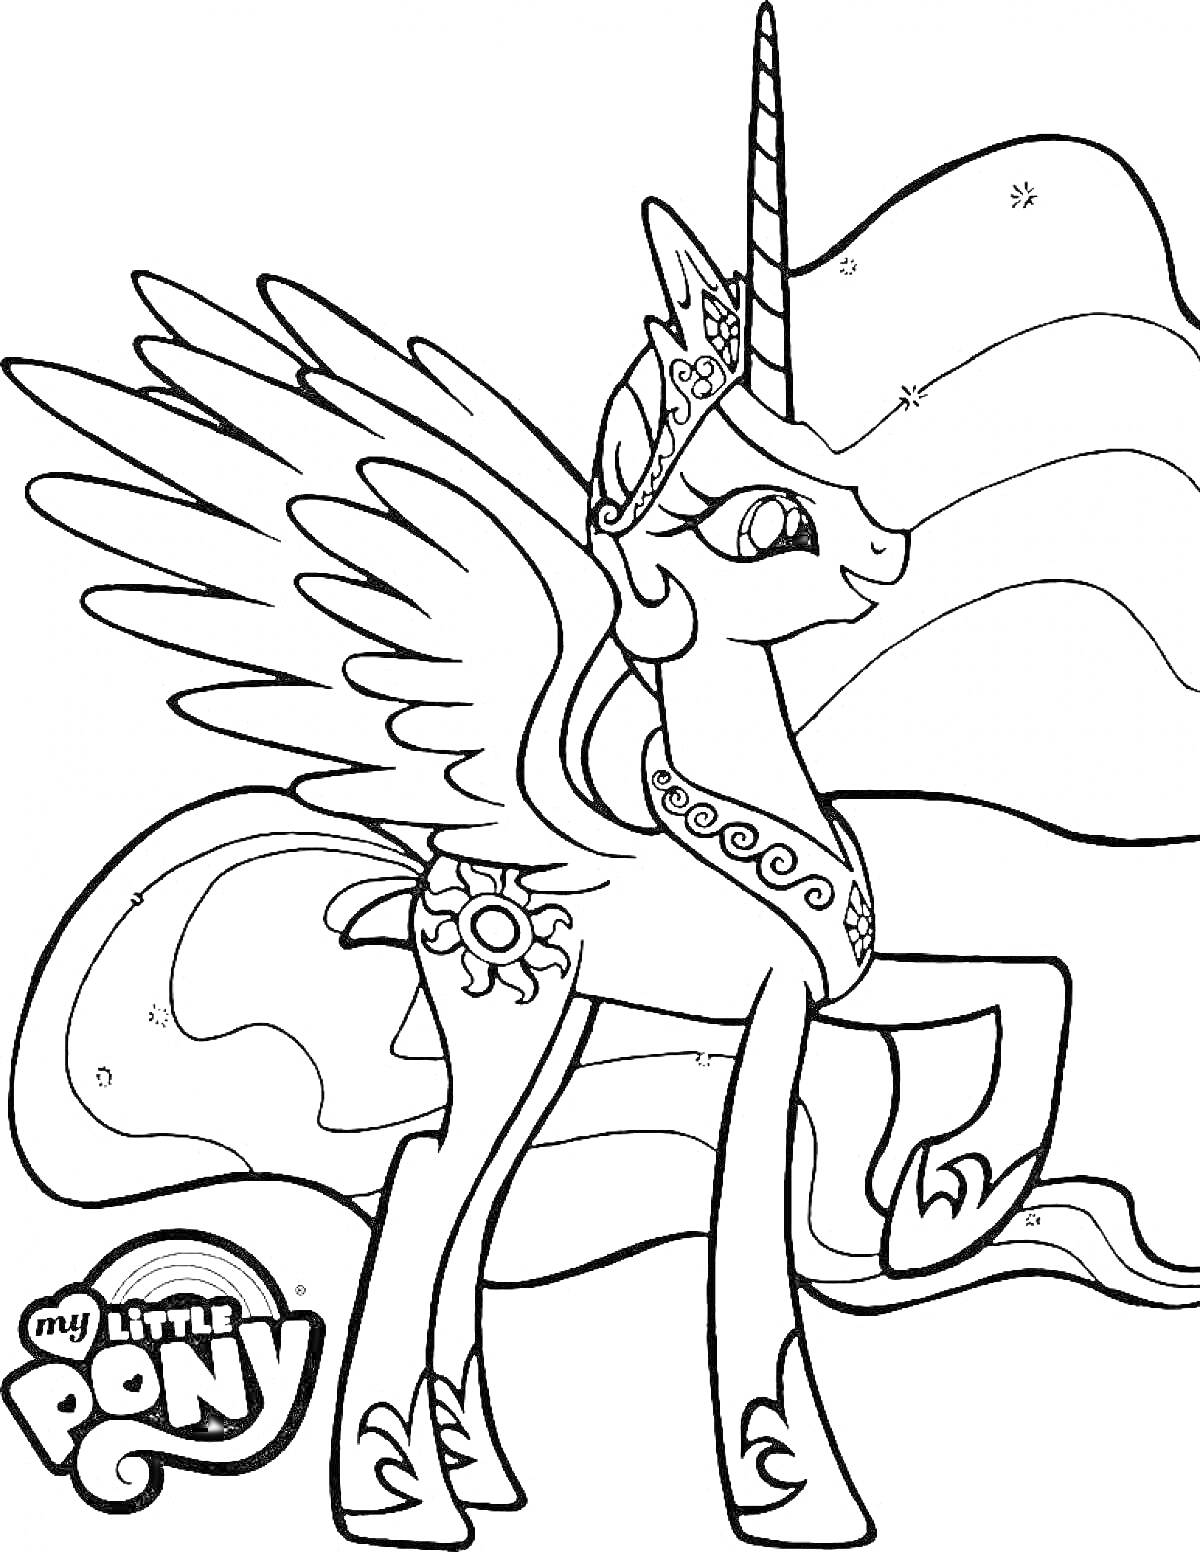 Раскраска Пони Селестия с короной, крыльями и рогом, эмблемой солнца, развевающейся гривой и логотипом My Little Pony